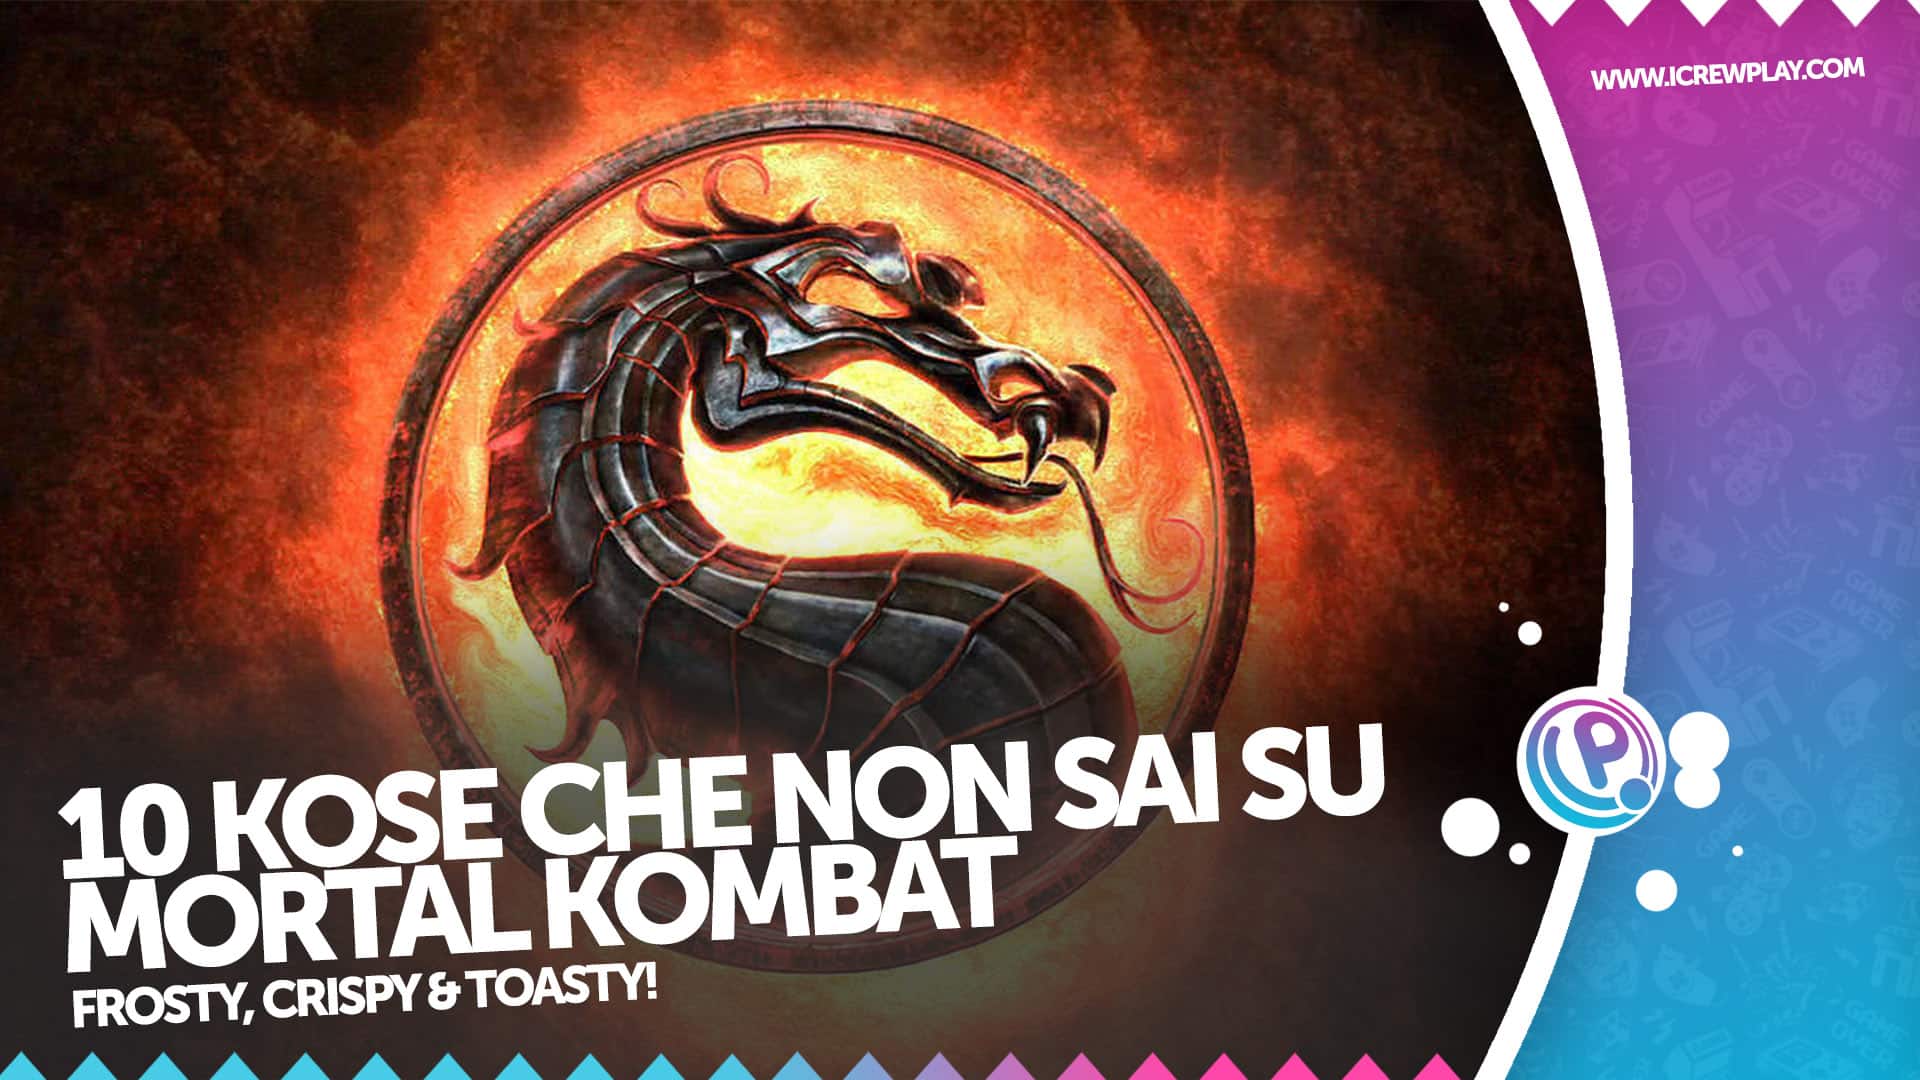 10 cose che forse non sai su Mortal Kombat 6